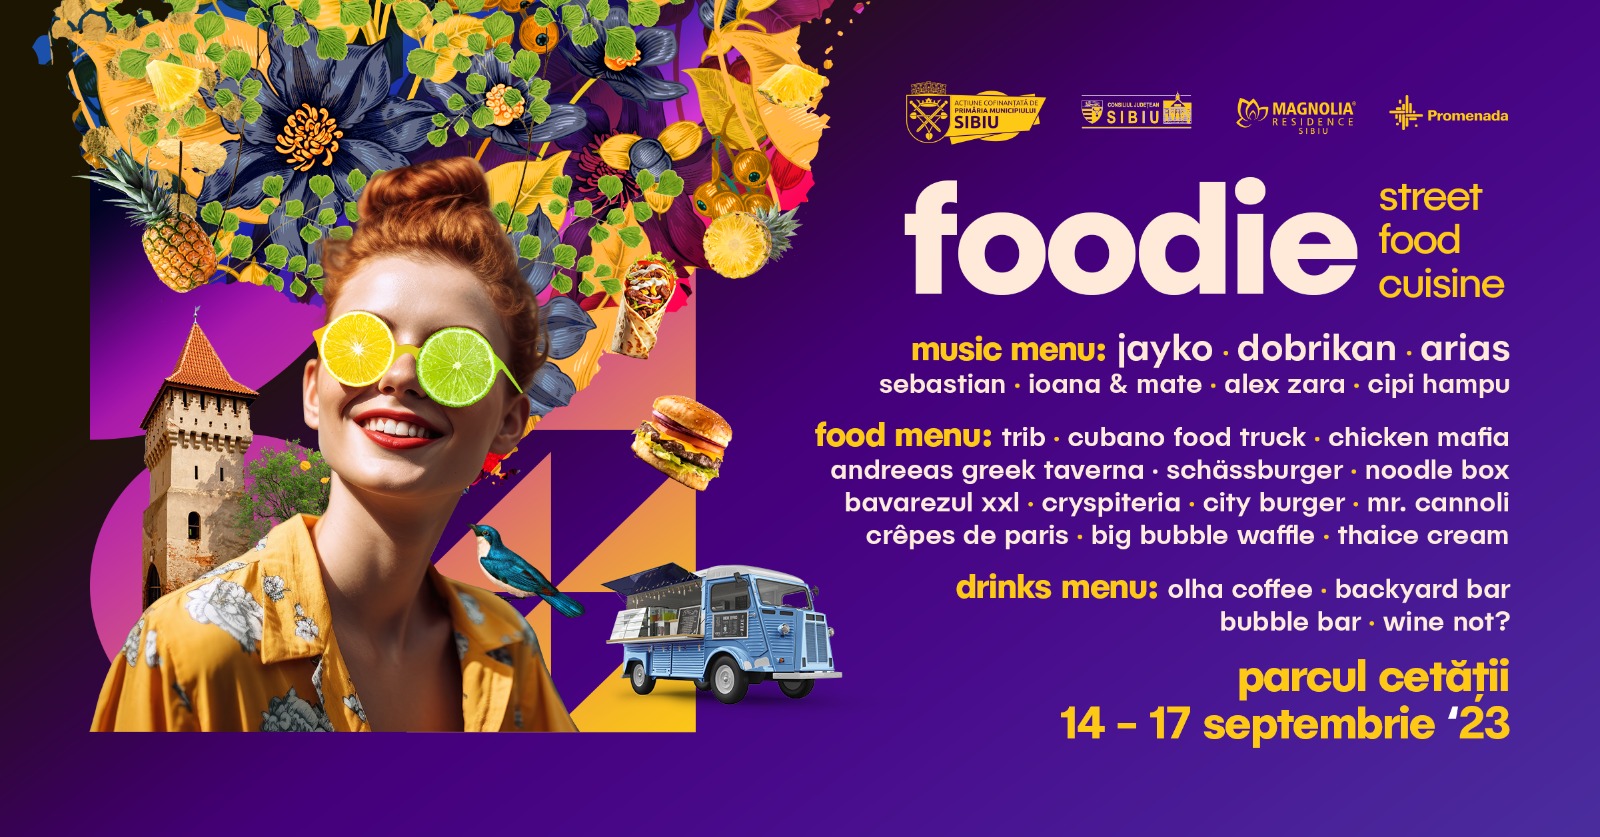 Foodie - street food cuisine 2023